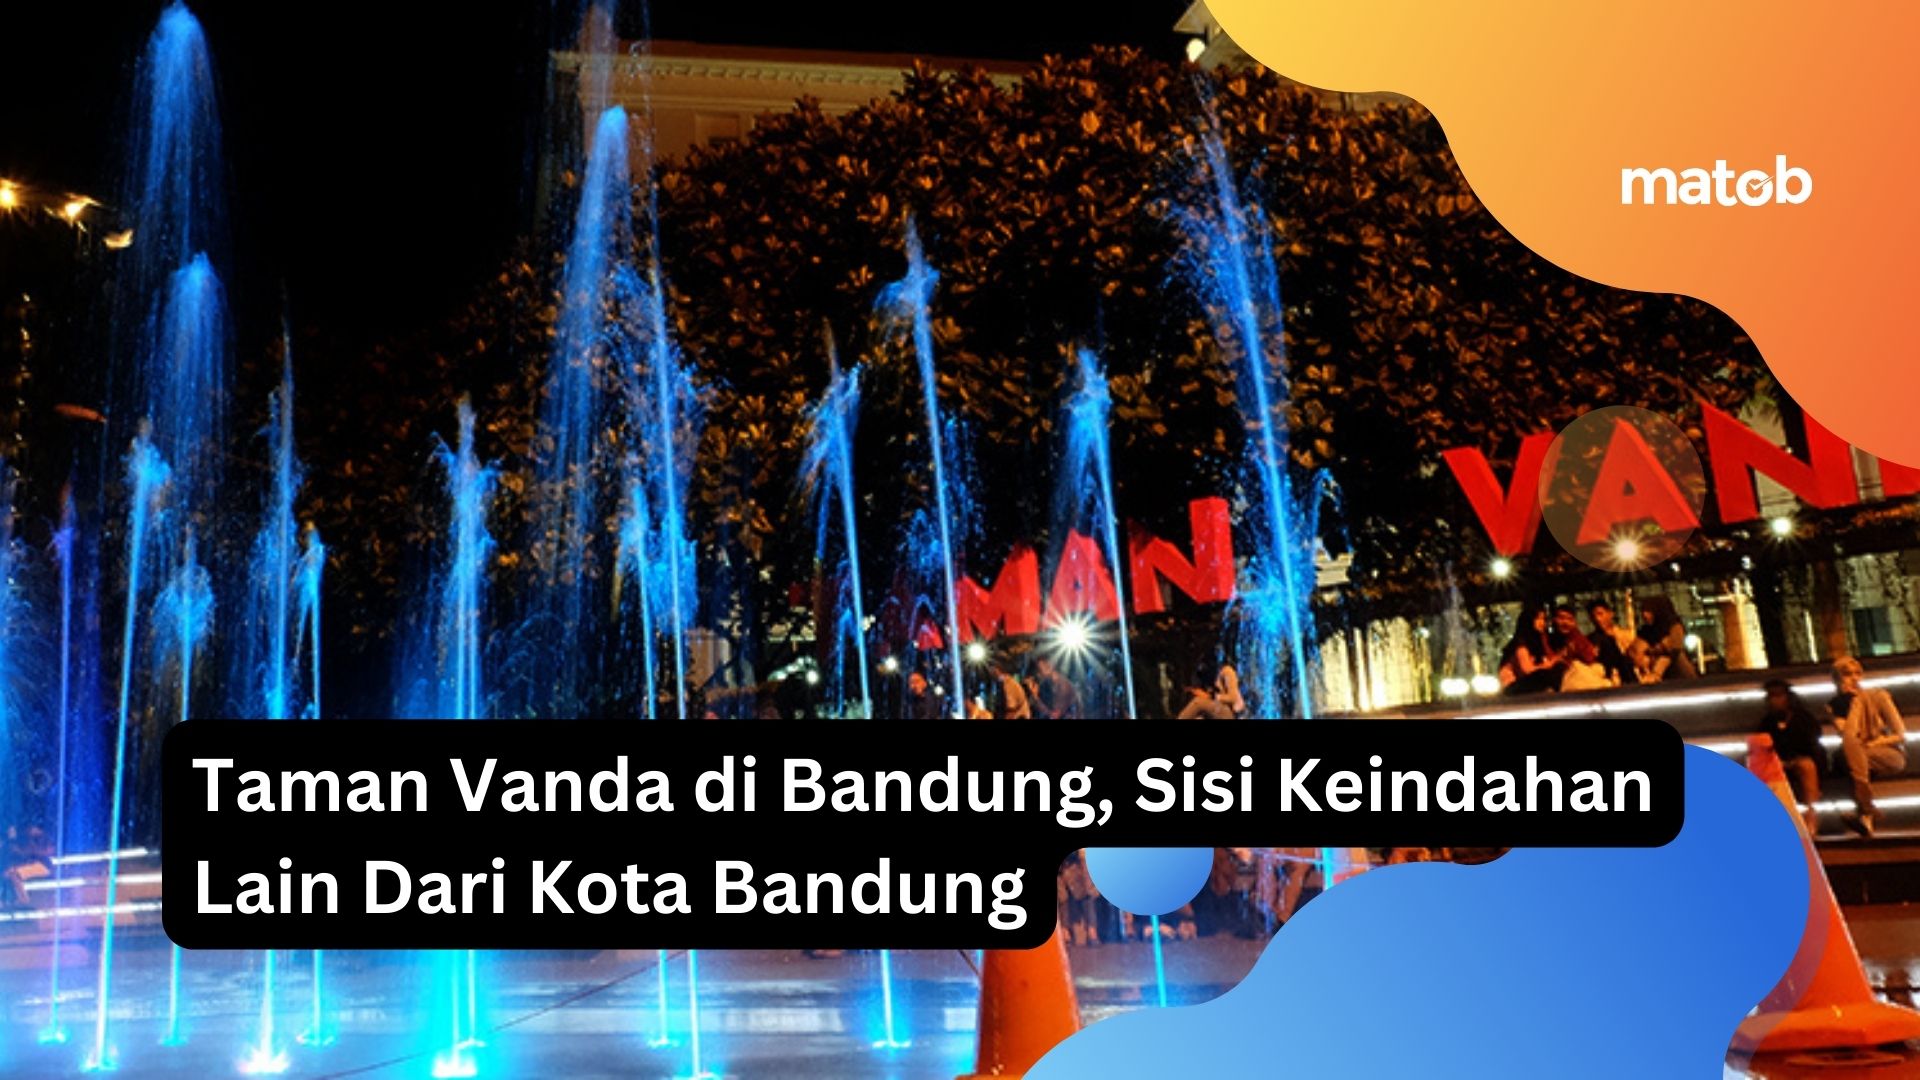 Taman Vanda di Bandung, Sisi Keindahan Lain Dari Kota Bandung